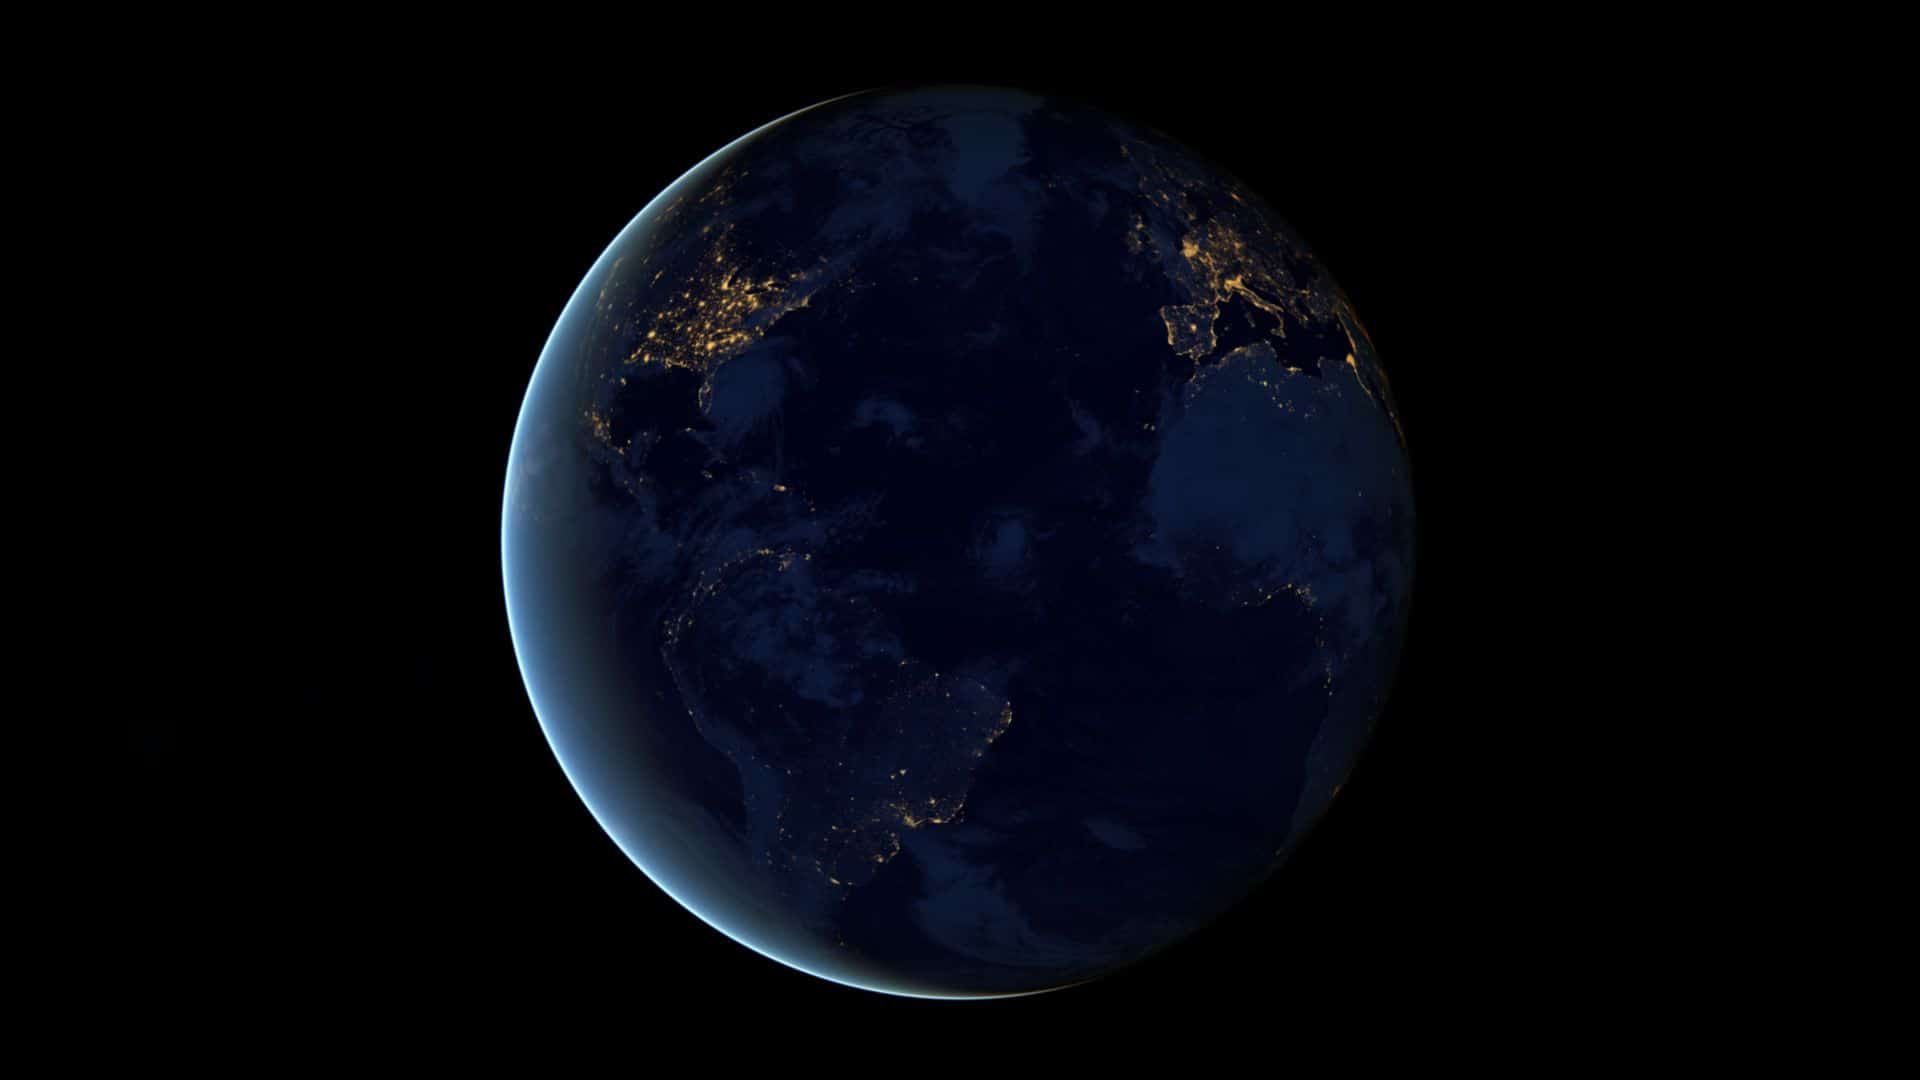 صور لشكل الارض الحقيقي من الفضاء احتفالا باليوم العالمي للبيئة